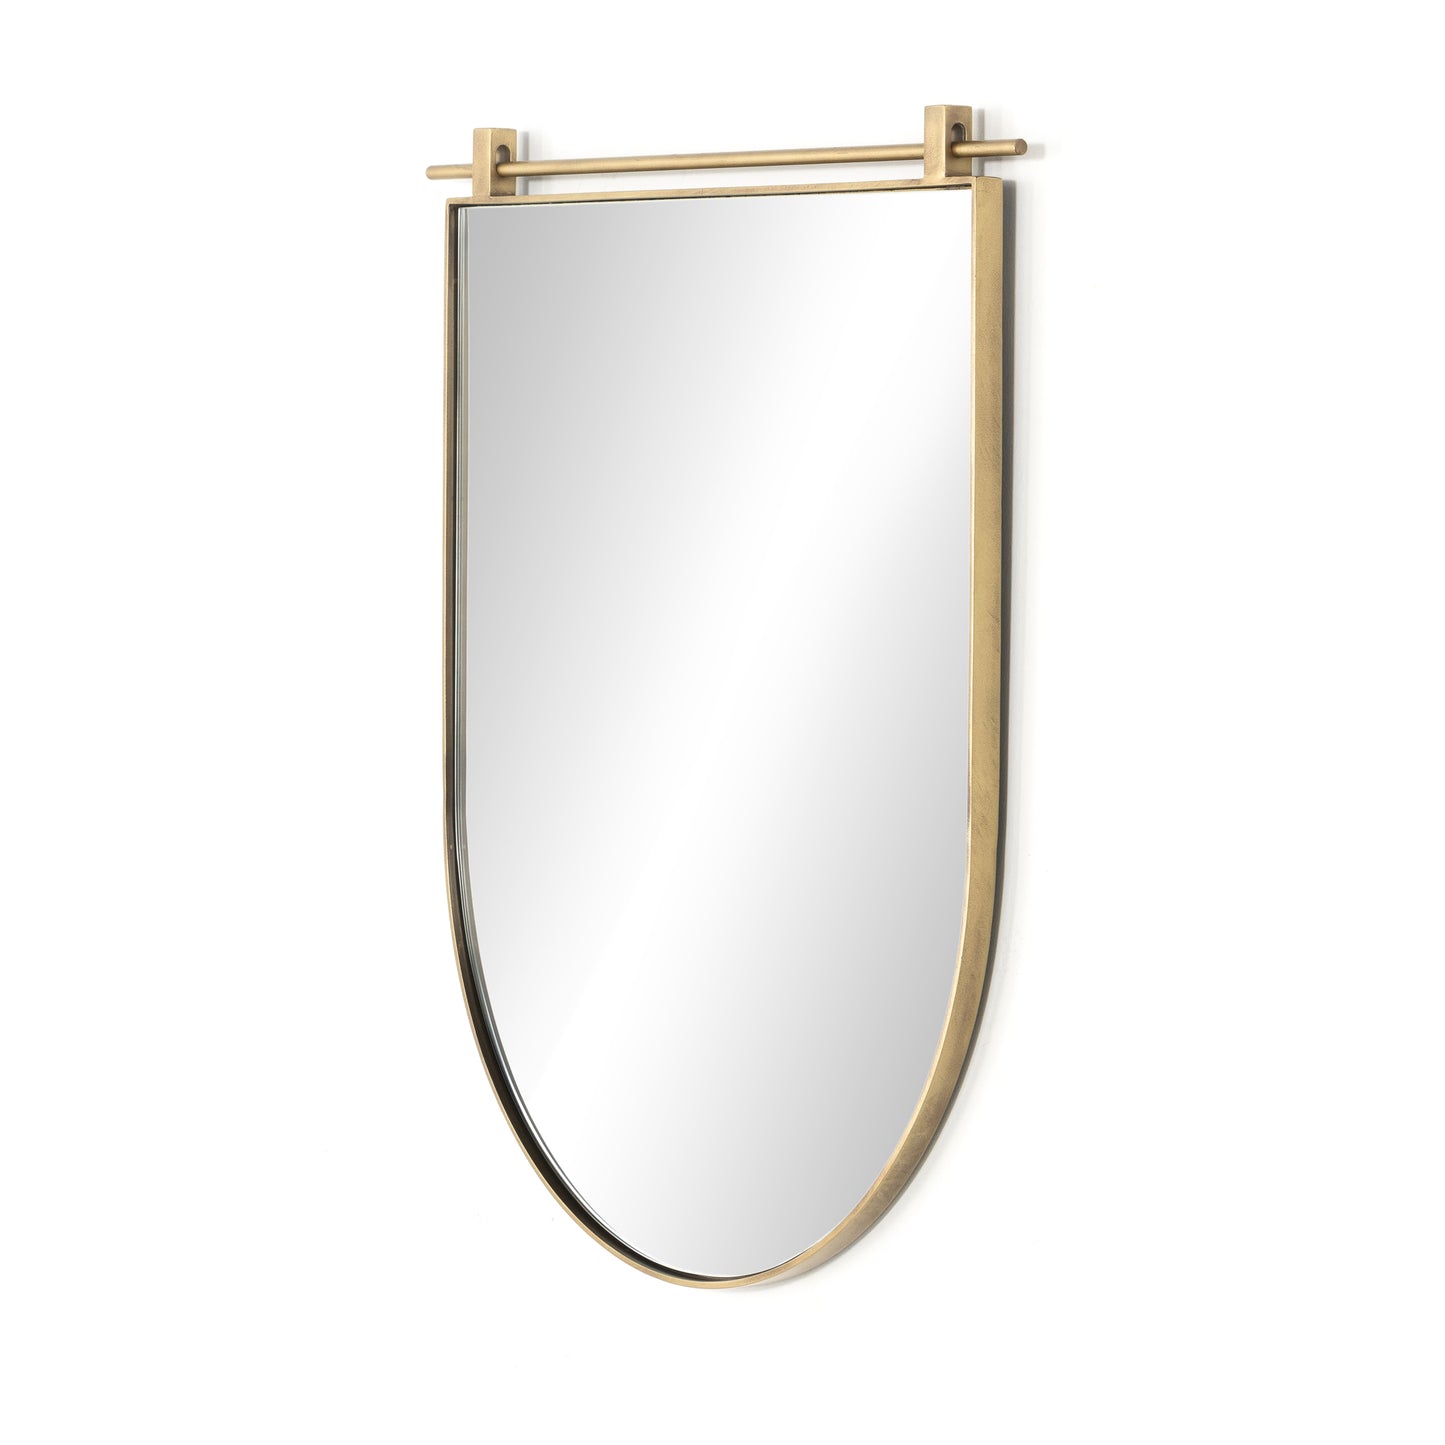 Gold bottom arch mirror